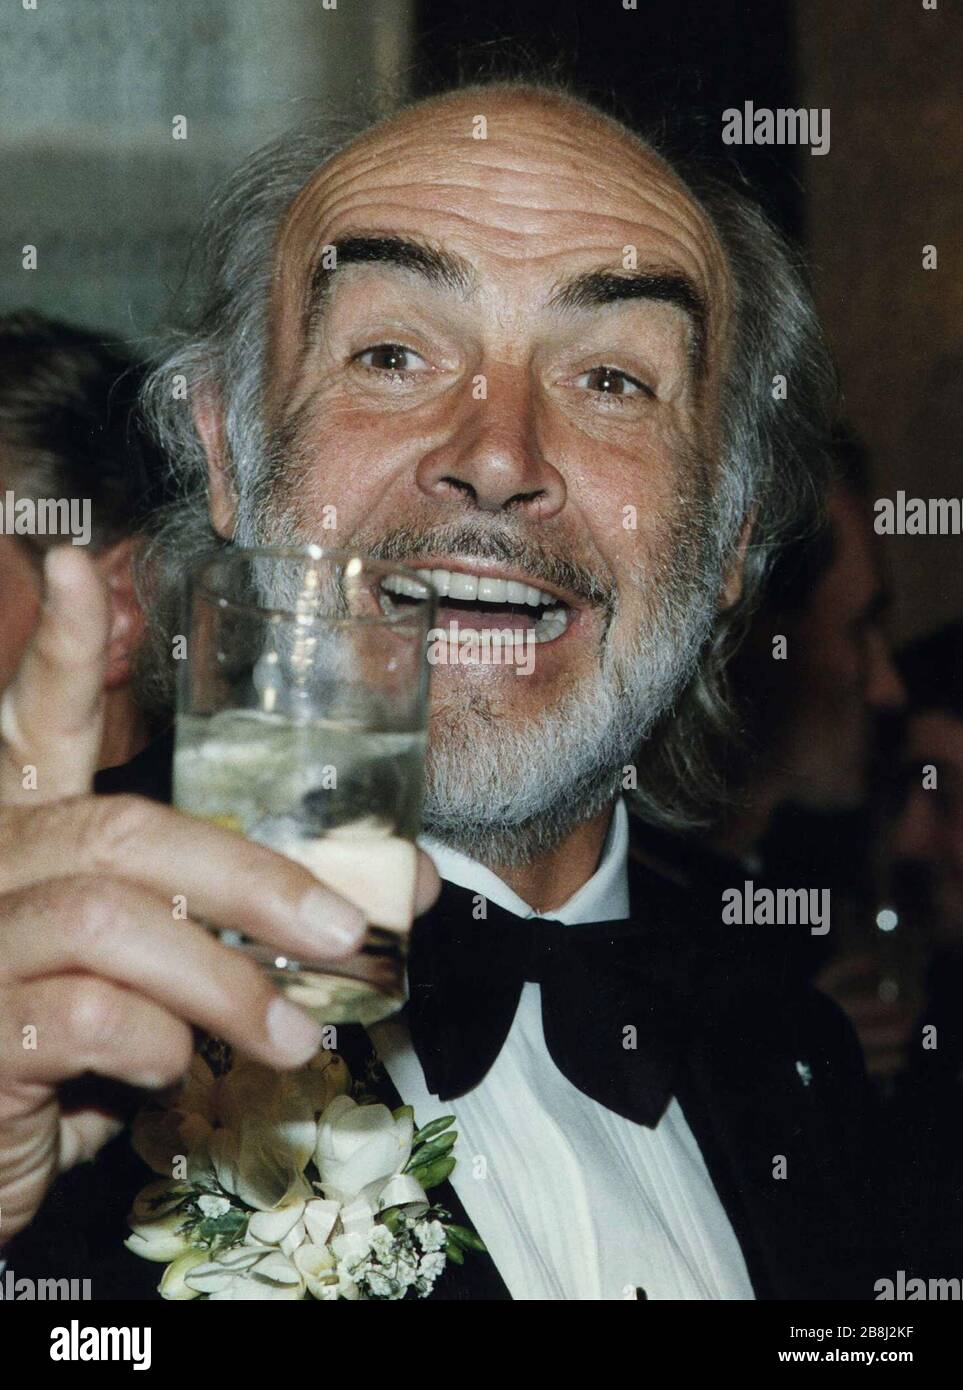 Der legendäre schottische Filmschauspieler Sir Sean Connery, im Edinburgh Press Club während einer Funktion zu Ehren seiner Arbeit in der Filmindustrie abgebildet. Connery wurde im schottischen Edinburgh geboren und war ein gefeierter Hollywood-Star, der sich in den 1960er Jahren den Namen machte, der die Hauptrolle in einer Reihe von James-Bond-Filmen spielte. Er war ein engagierter Nationalist, der der Scottish National Party große Summen Geld spendete. Stockfoto